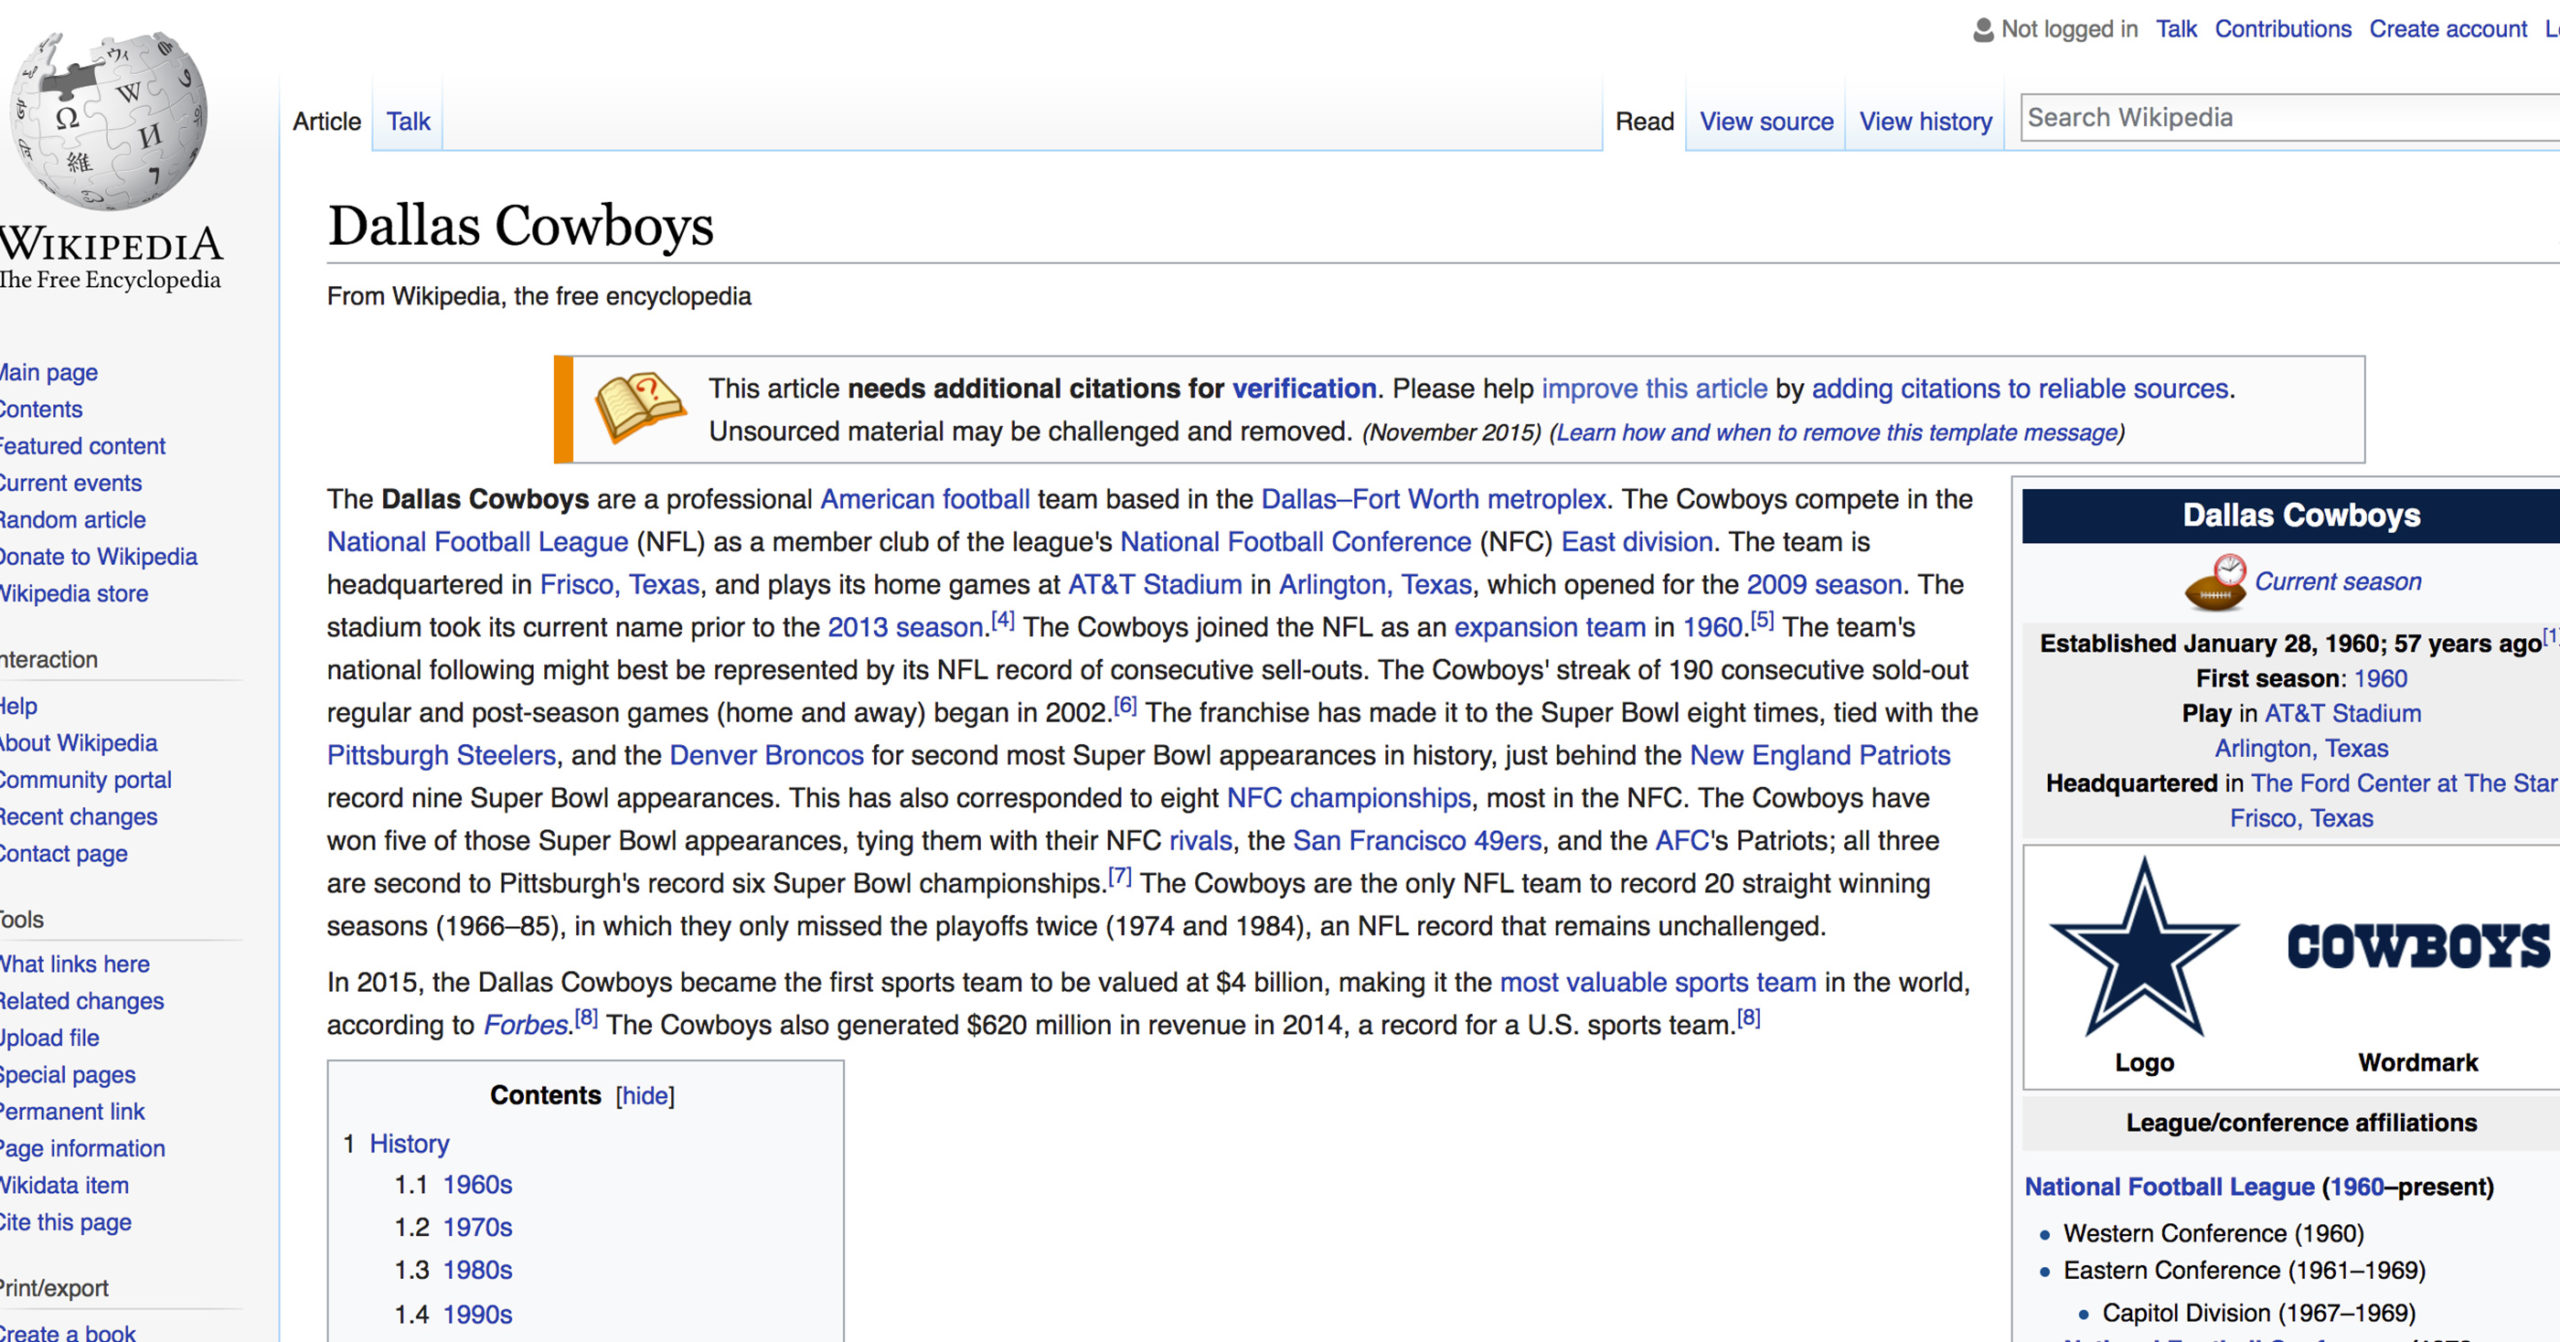 Aaron Rodgers - Wikipedia